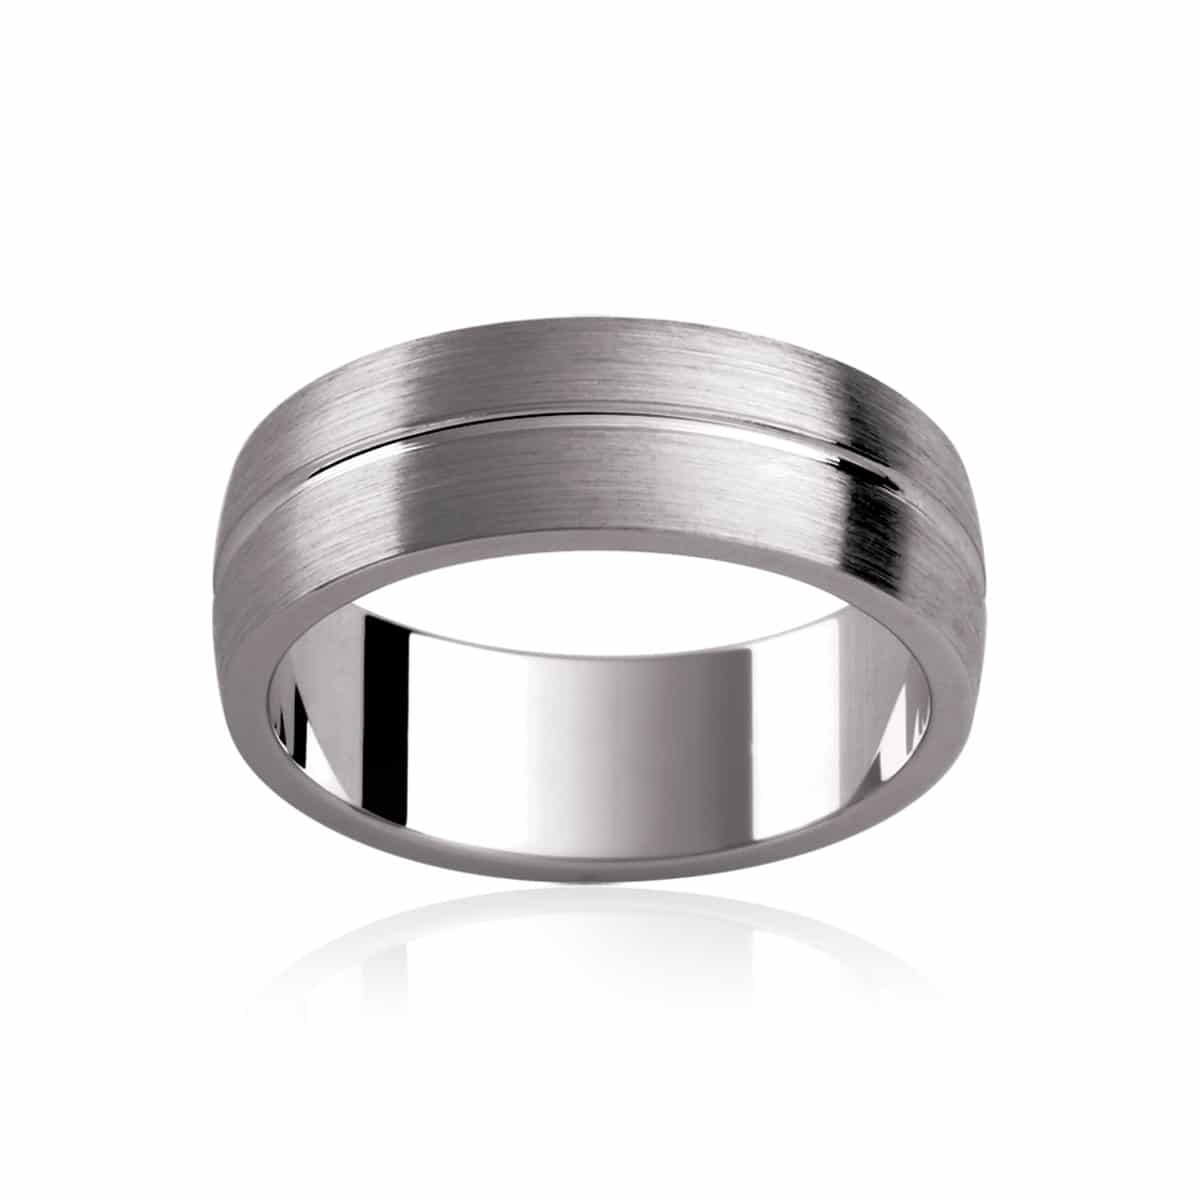 Titanium and Zirconium Wedding Bands & Rings | Made in Australia